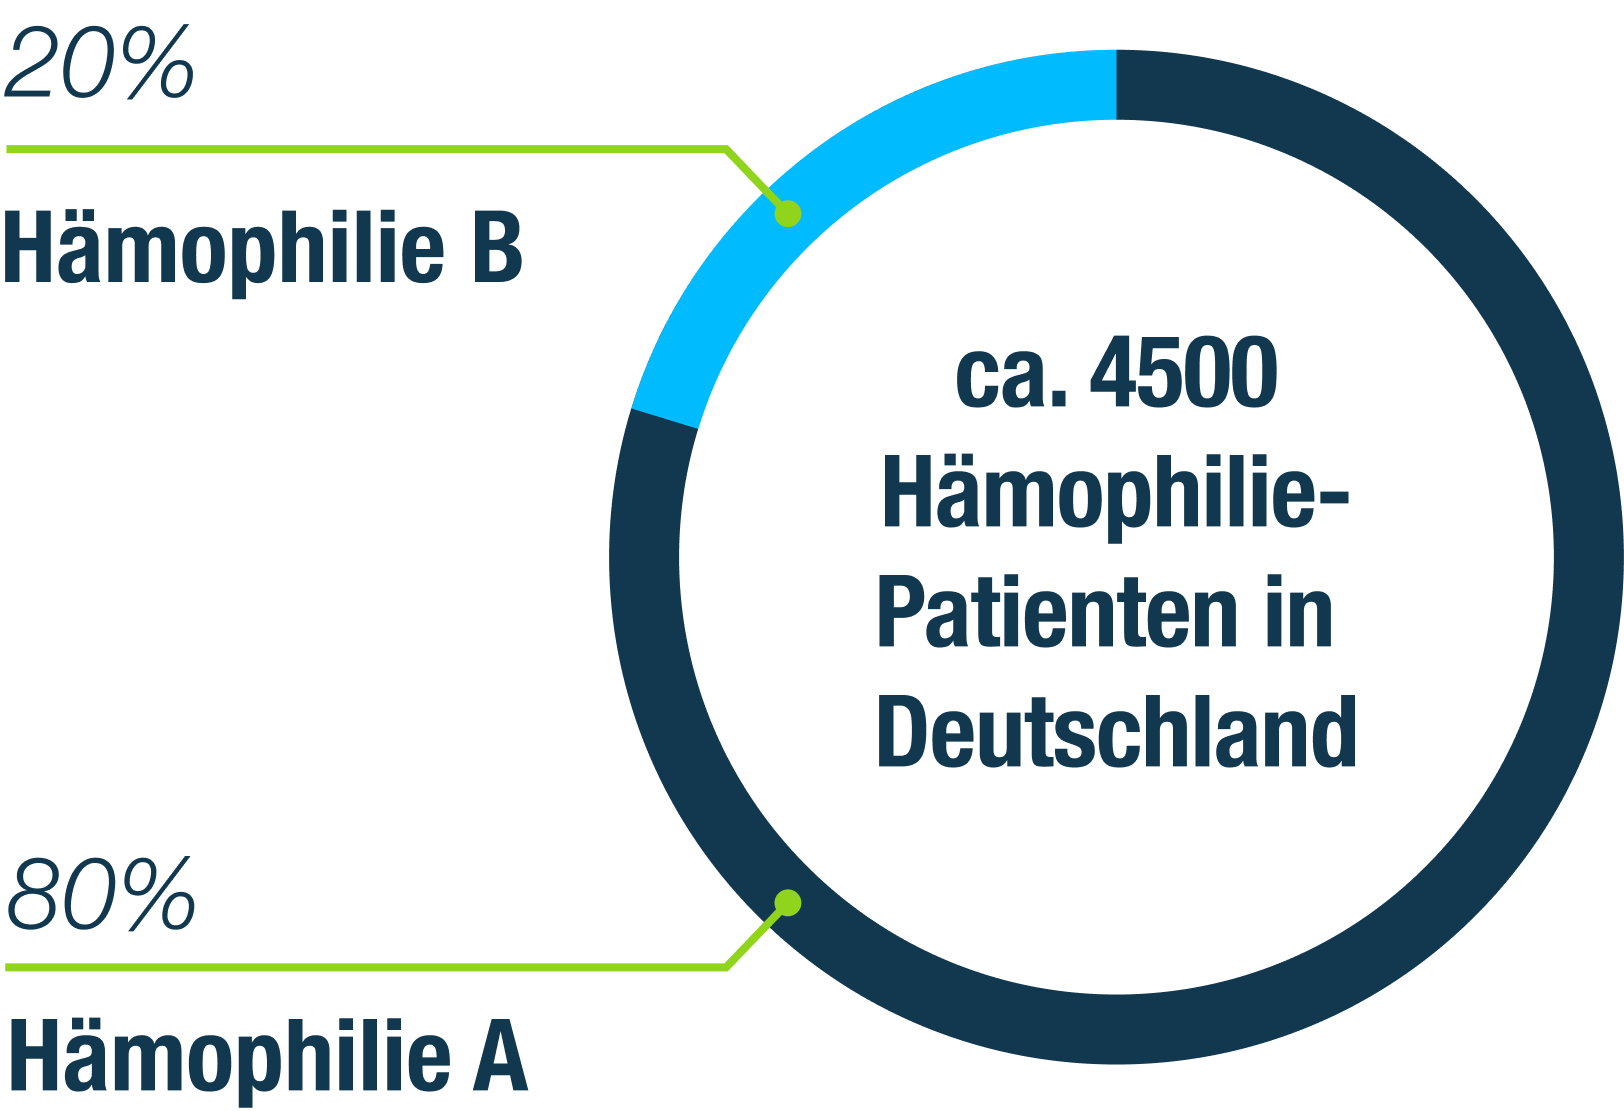 Hämophiliepatienten in Deutschland